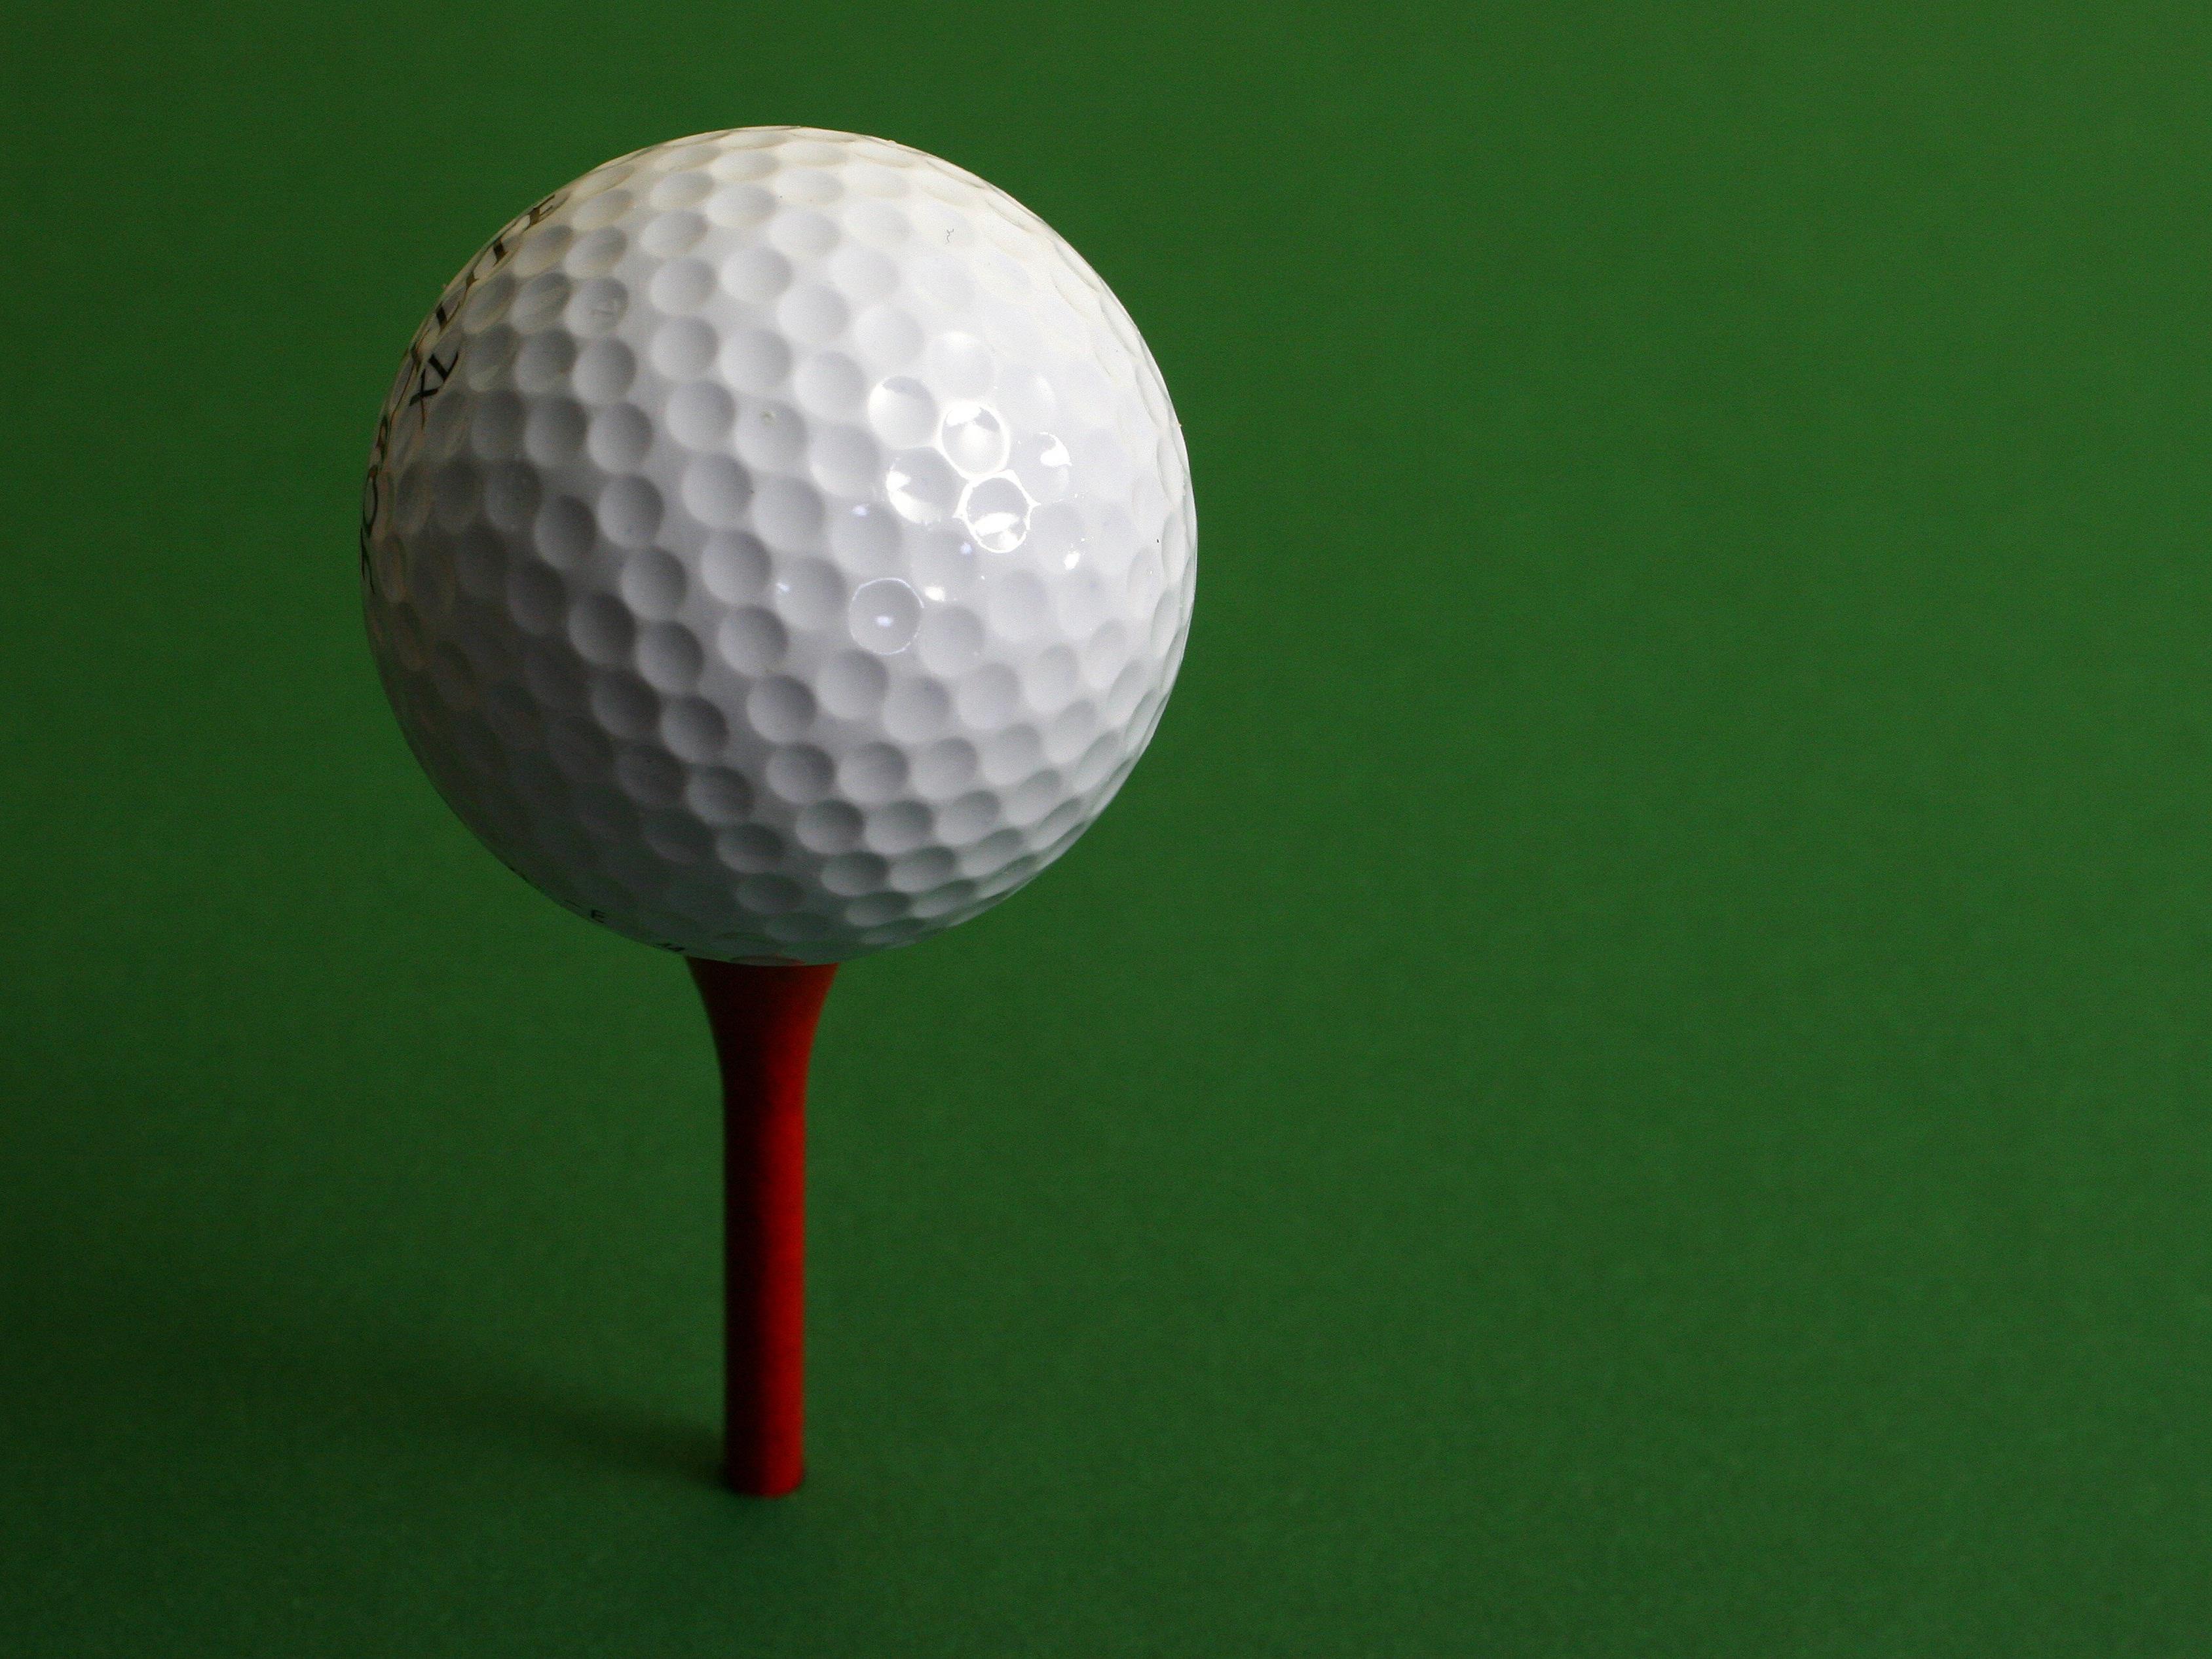 So kennen wir ihn - von innen sieht ein Golfball eher unheimlich aus.